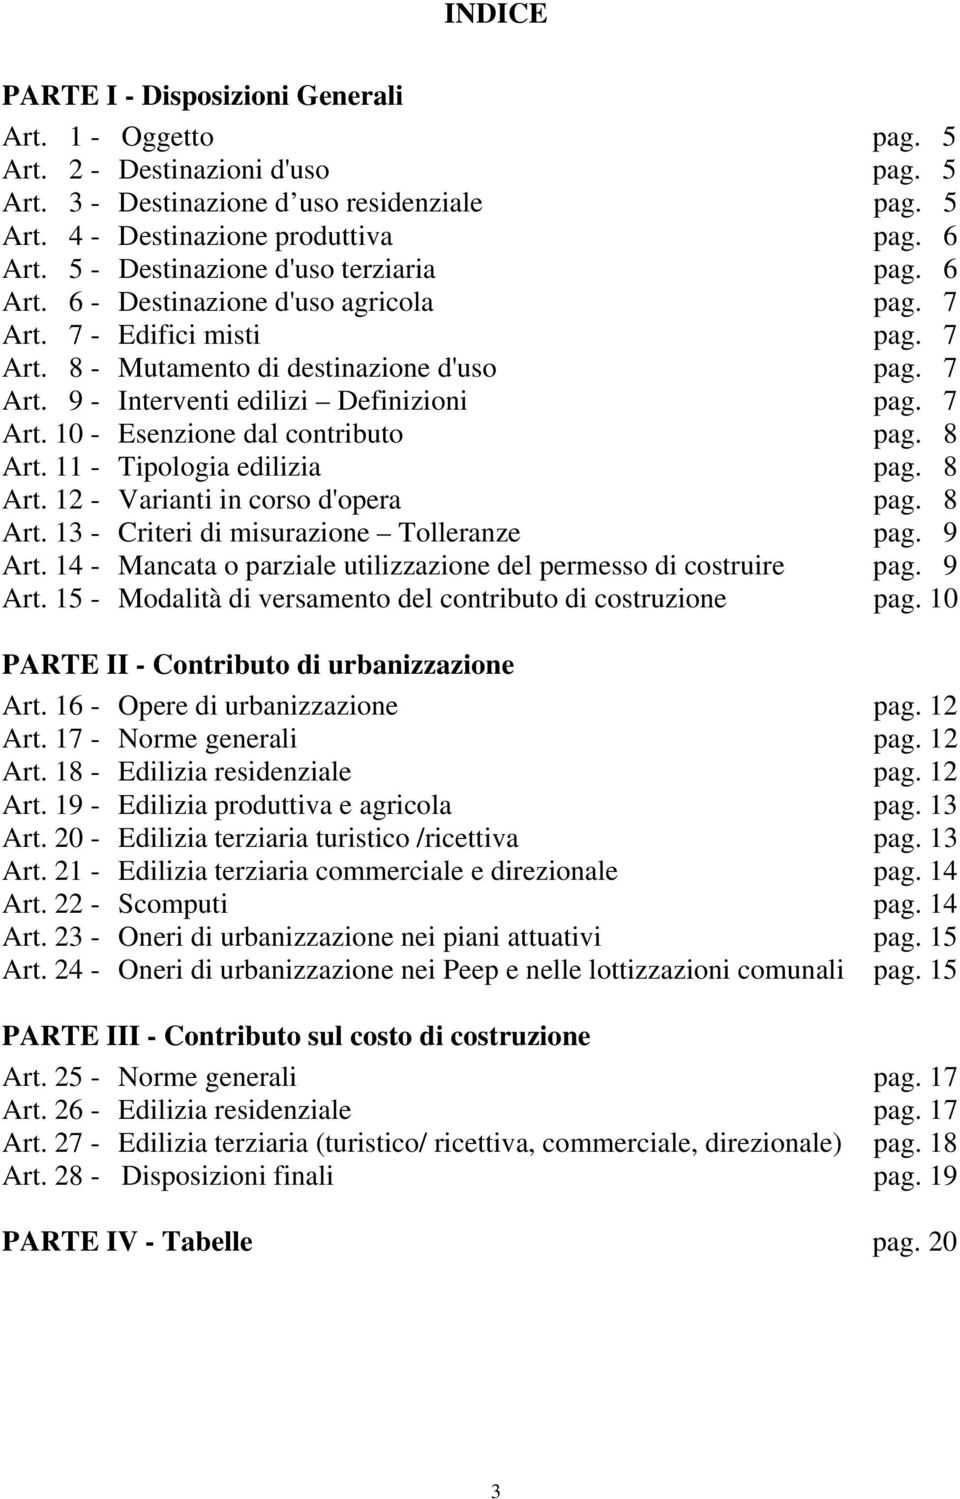 7 Art. 10 - Esenzione dal contributo pag. 8 Art. 11 - Tipologia edilizia pag. 8 Art. 12 - Varianti in corso d'opera pag. 8 Art. 13 - Criteri di misurazione Tolleranze pag. 9 Art.